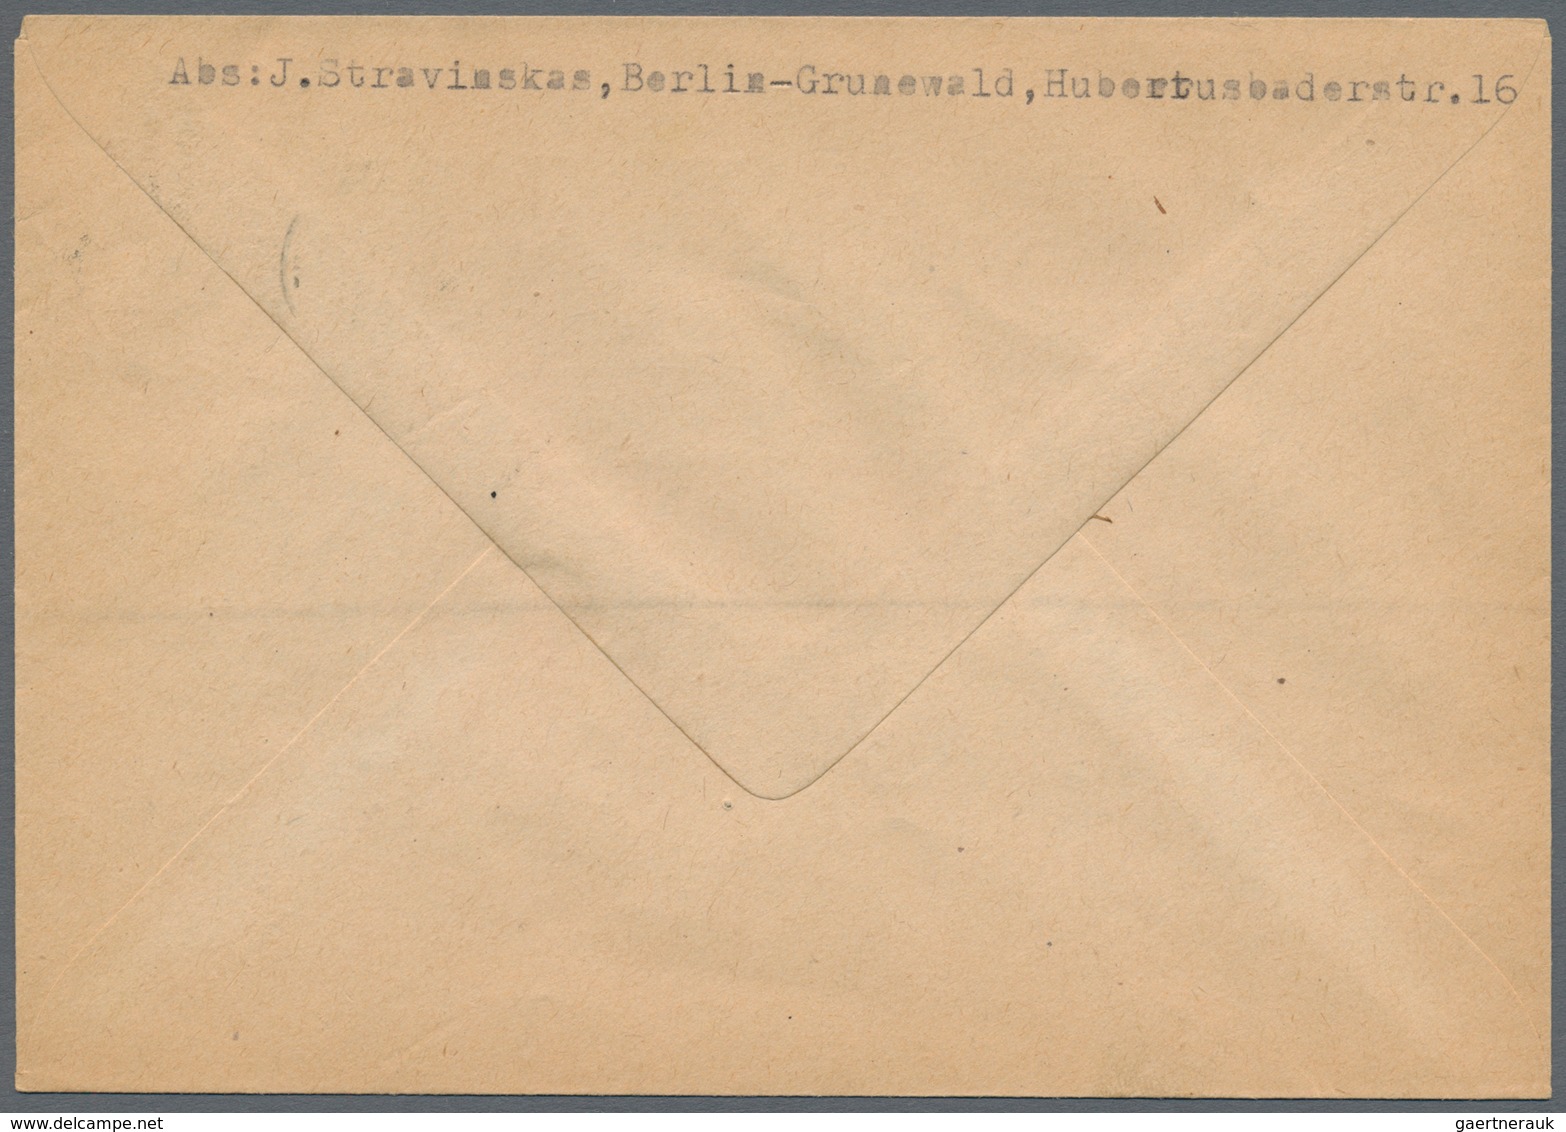 Berlin: 1948 Schwarzaufdruck: 15 Werte (inkl. 84 Pf. bis 5 M.) auf 6 Briefen von Berlin nach Babenha